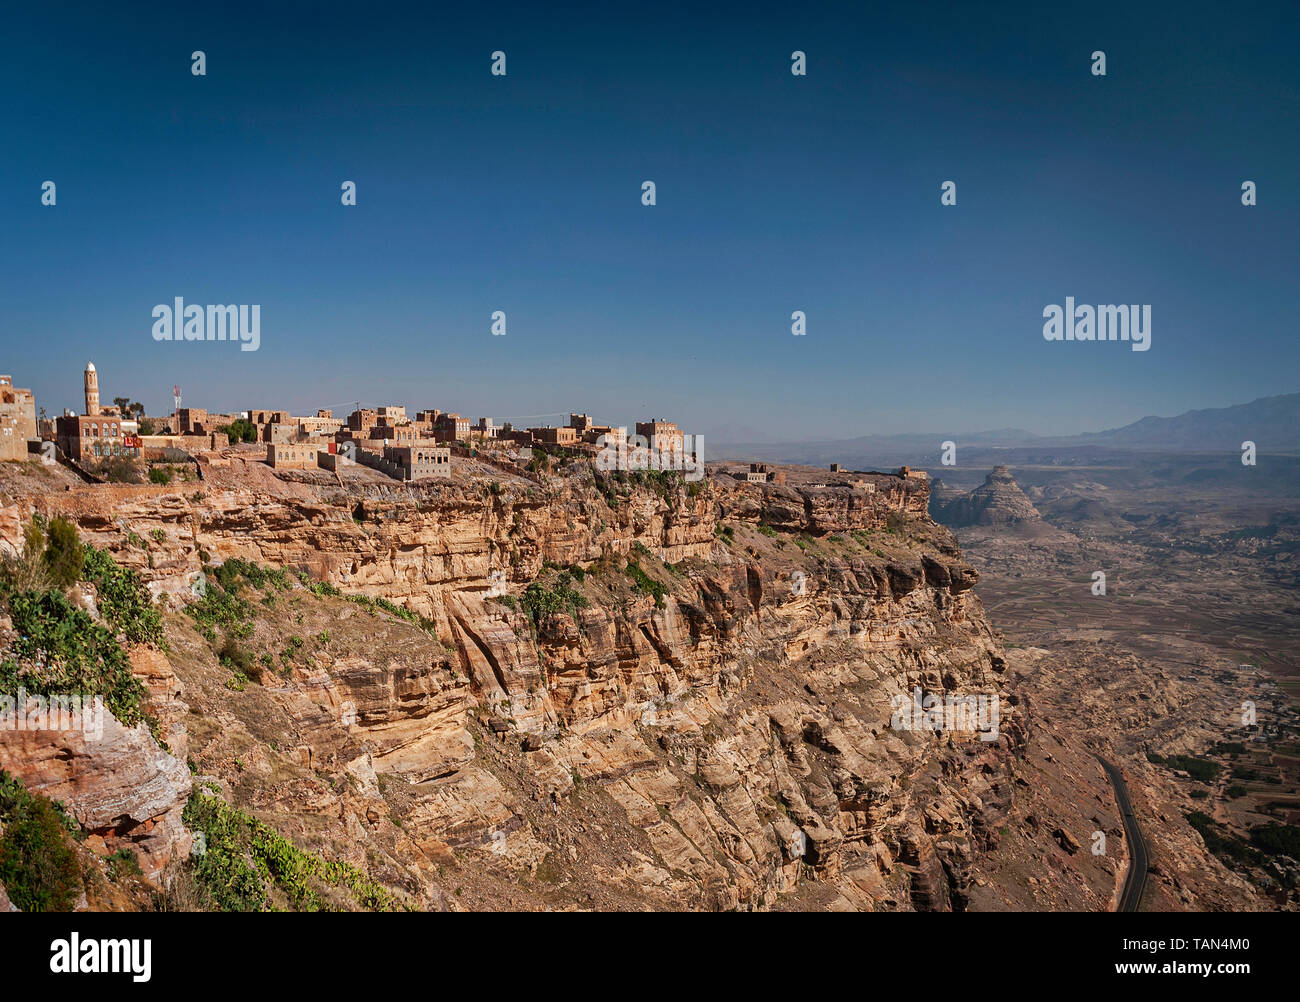 Kawkaban antica architettura tradizionale hilltop village in haraz montagne dello Yemen Foto Stock